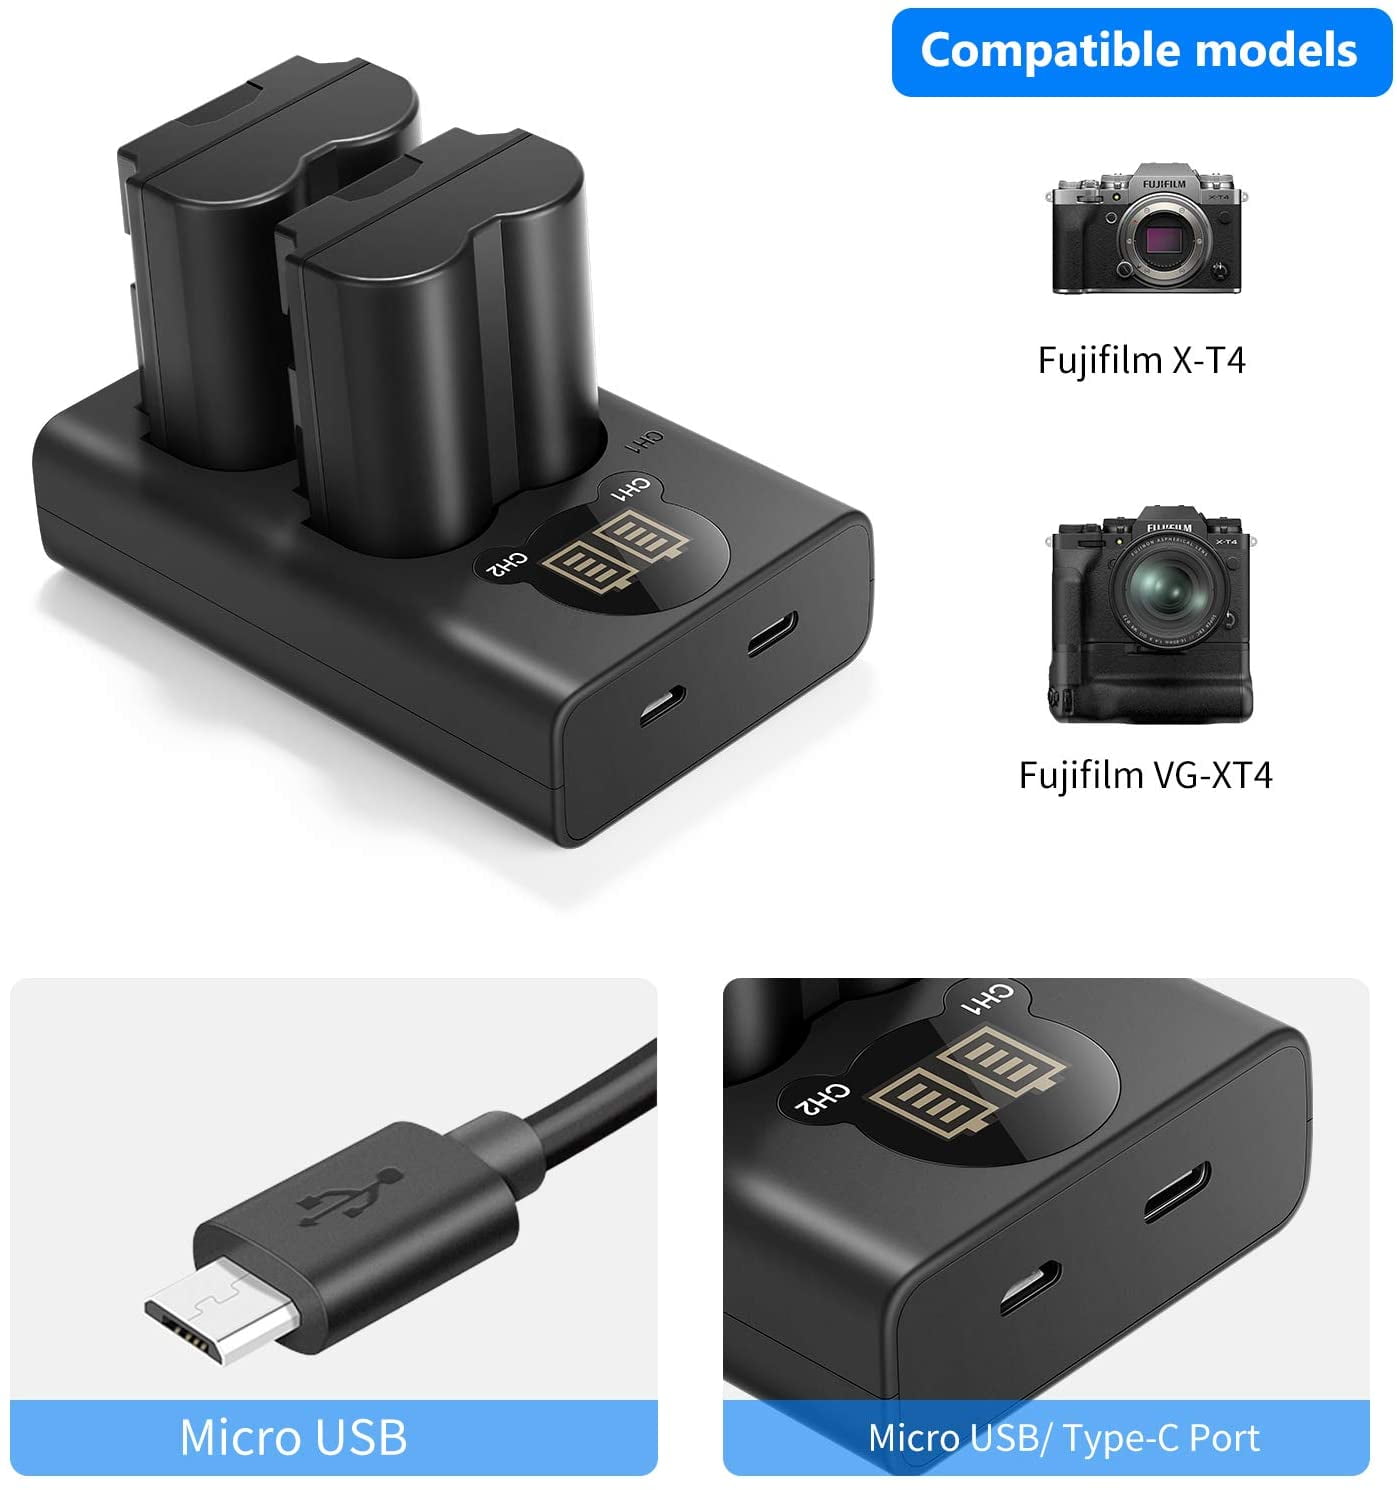 Entrée Micro USB/Type-C Neewer NP-W235 Batterie de Remplacement et Chargeur Ensemble Compatible avec Fujifilm X-T4 2 Packs de 2250 mAh Batterie de Remplacement et Double Chargeur de Batterie USB 